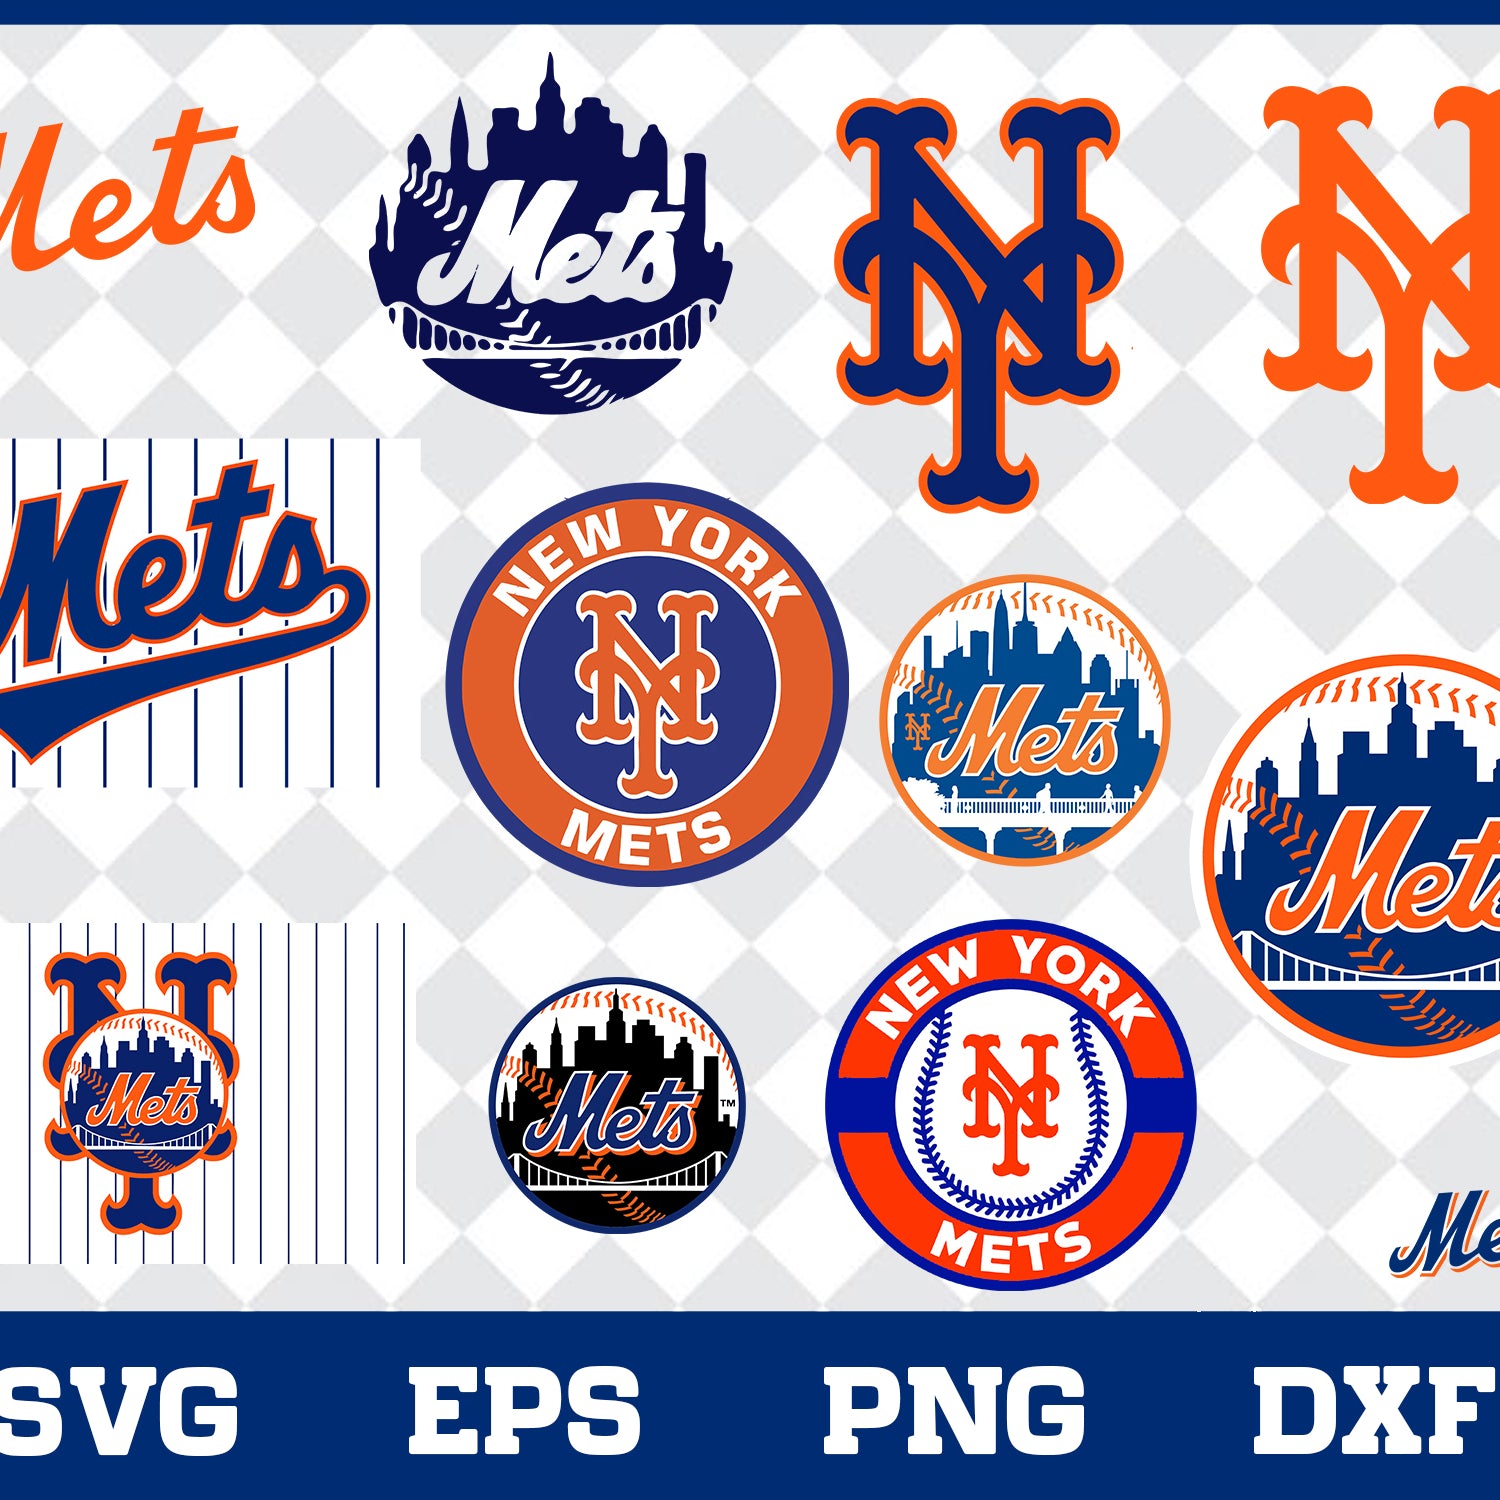 New York Metsbu Bundle svg, New York Mets svg, Mets svg, Mets svg for cut, png, dxf, eps digital file MBL30012118